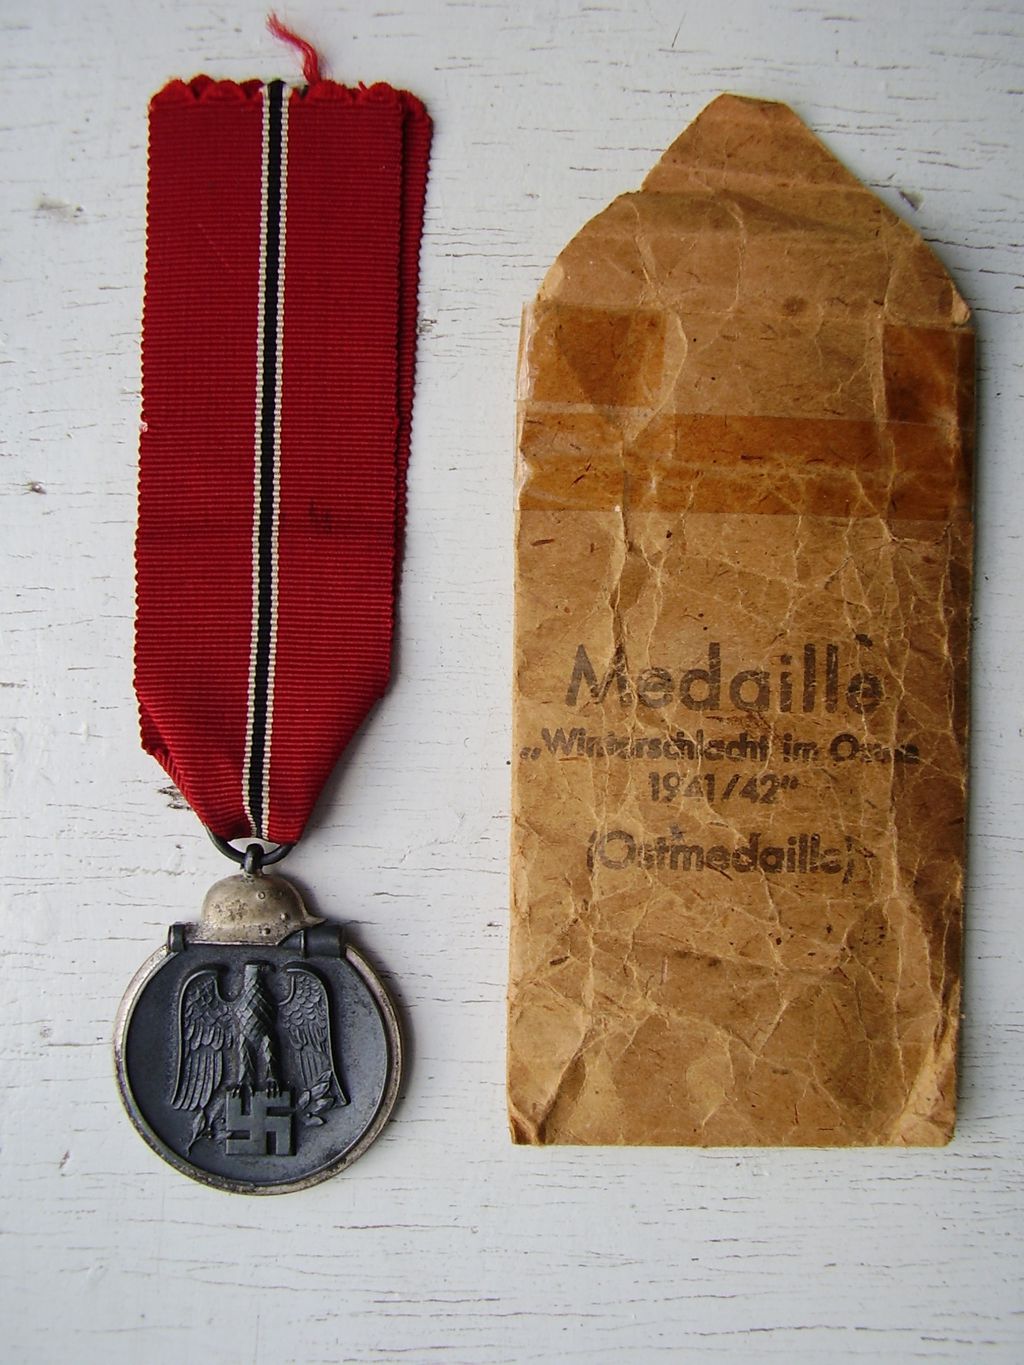 Medaille: Winterschlacht im Osten, 1941/42